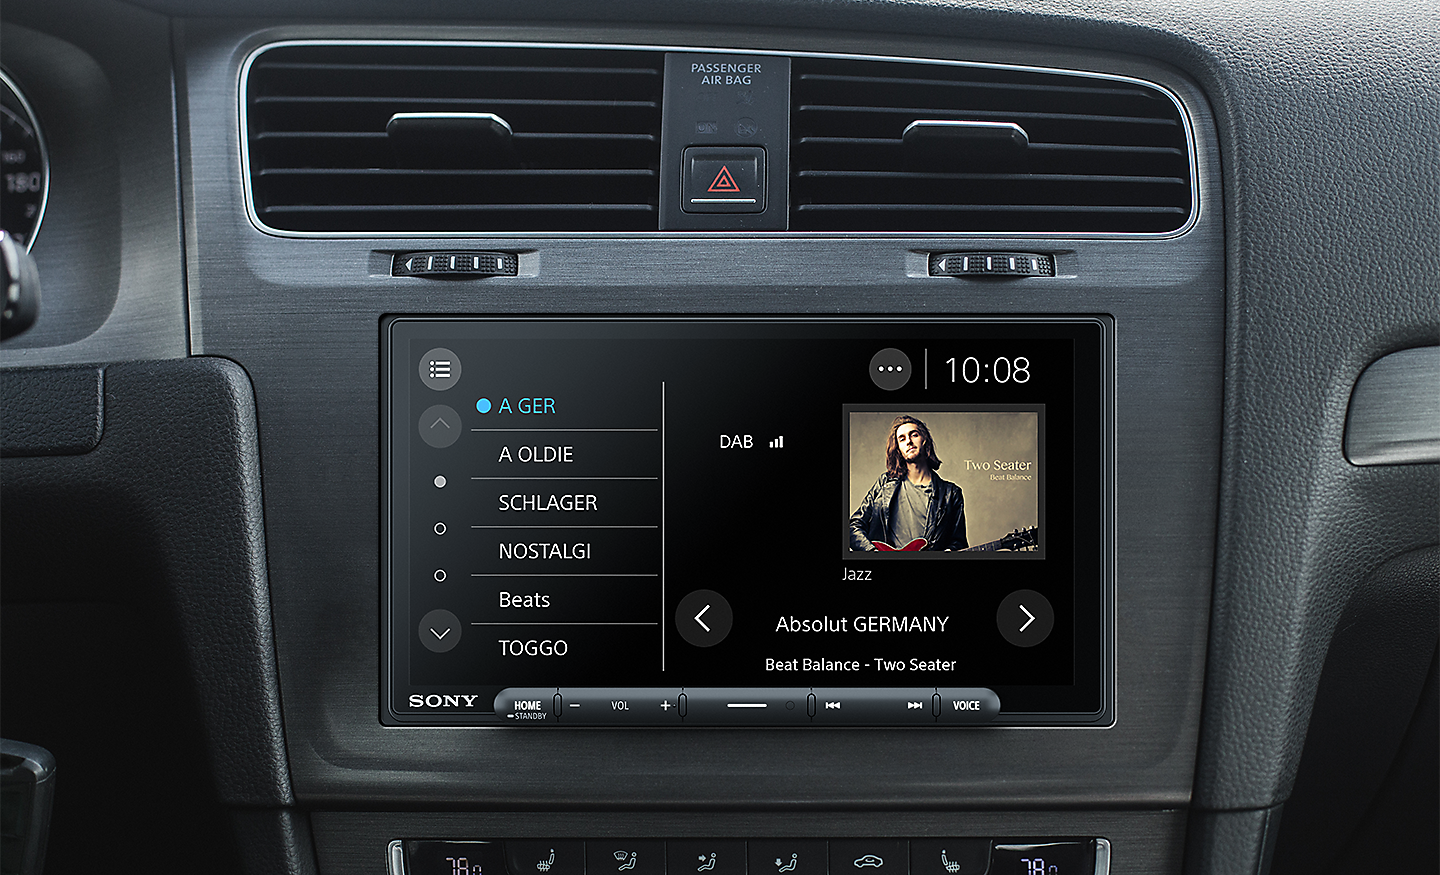 Afbeelding van de XAV-AX6050 in een dashboard met de interface van DAB-radio op het scherm